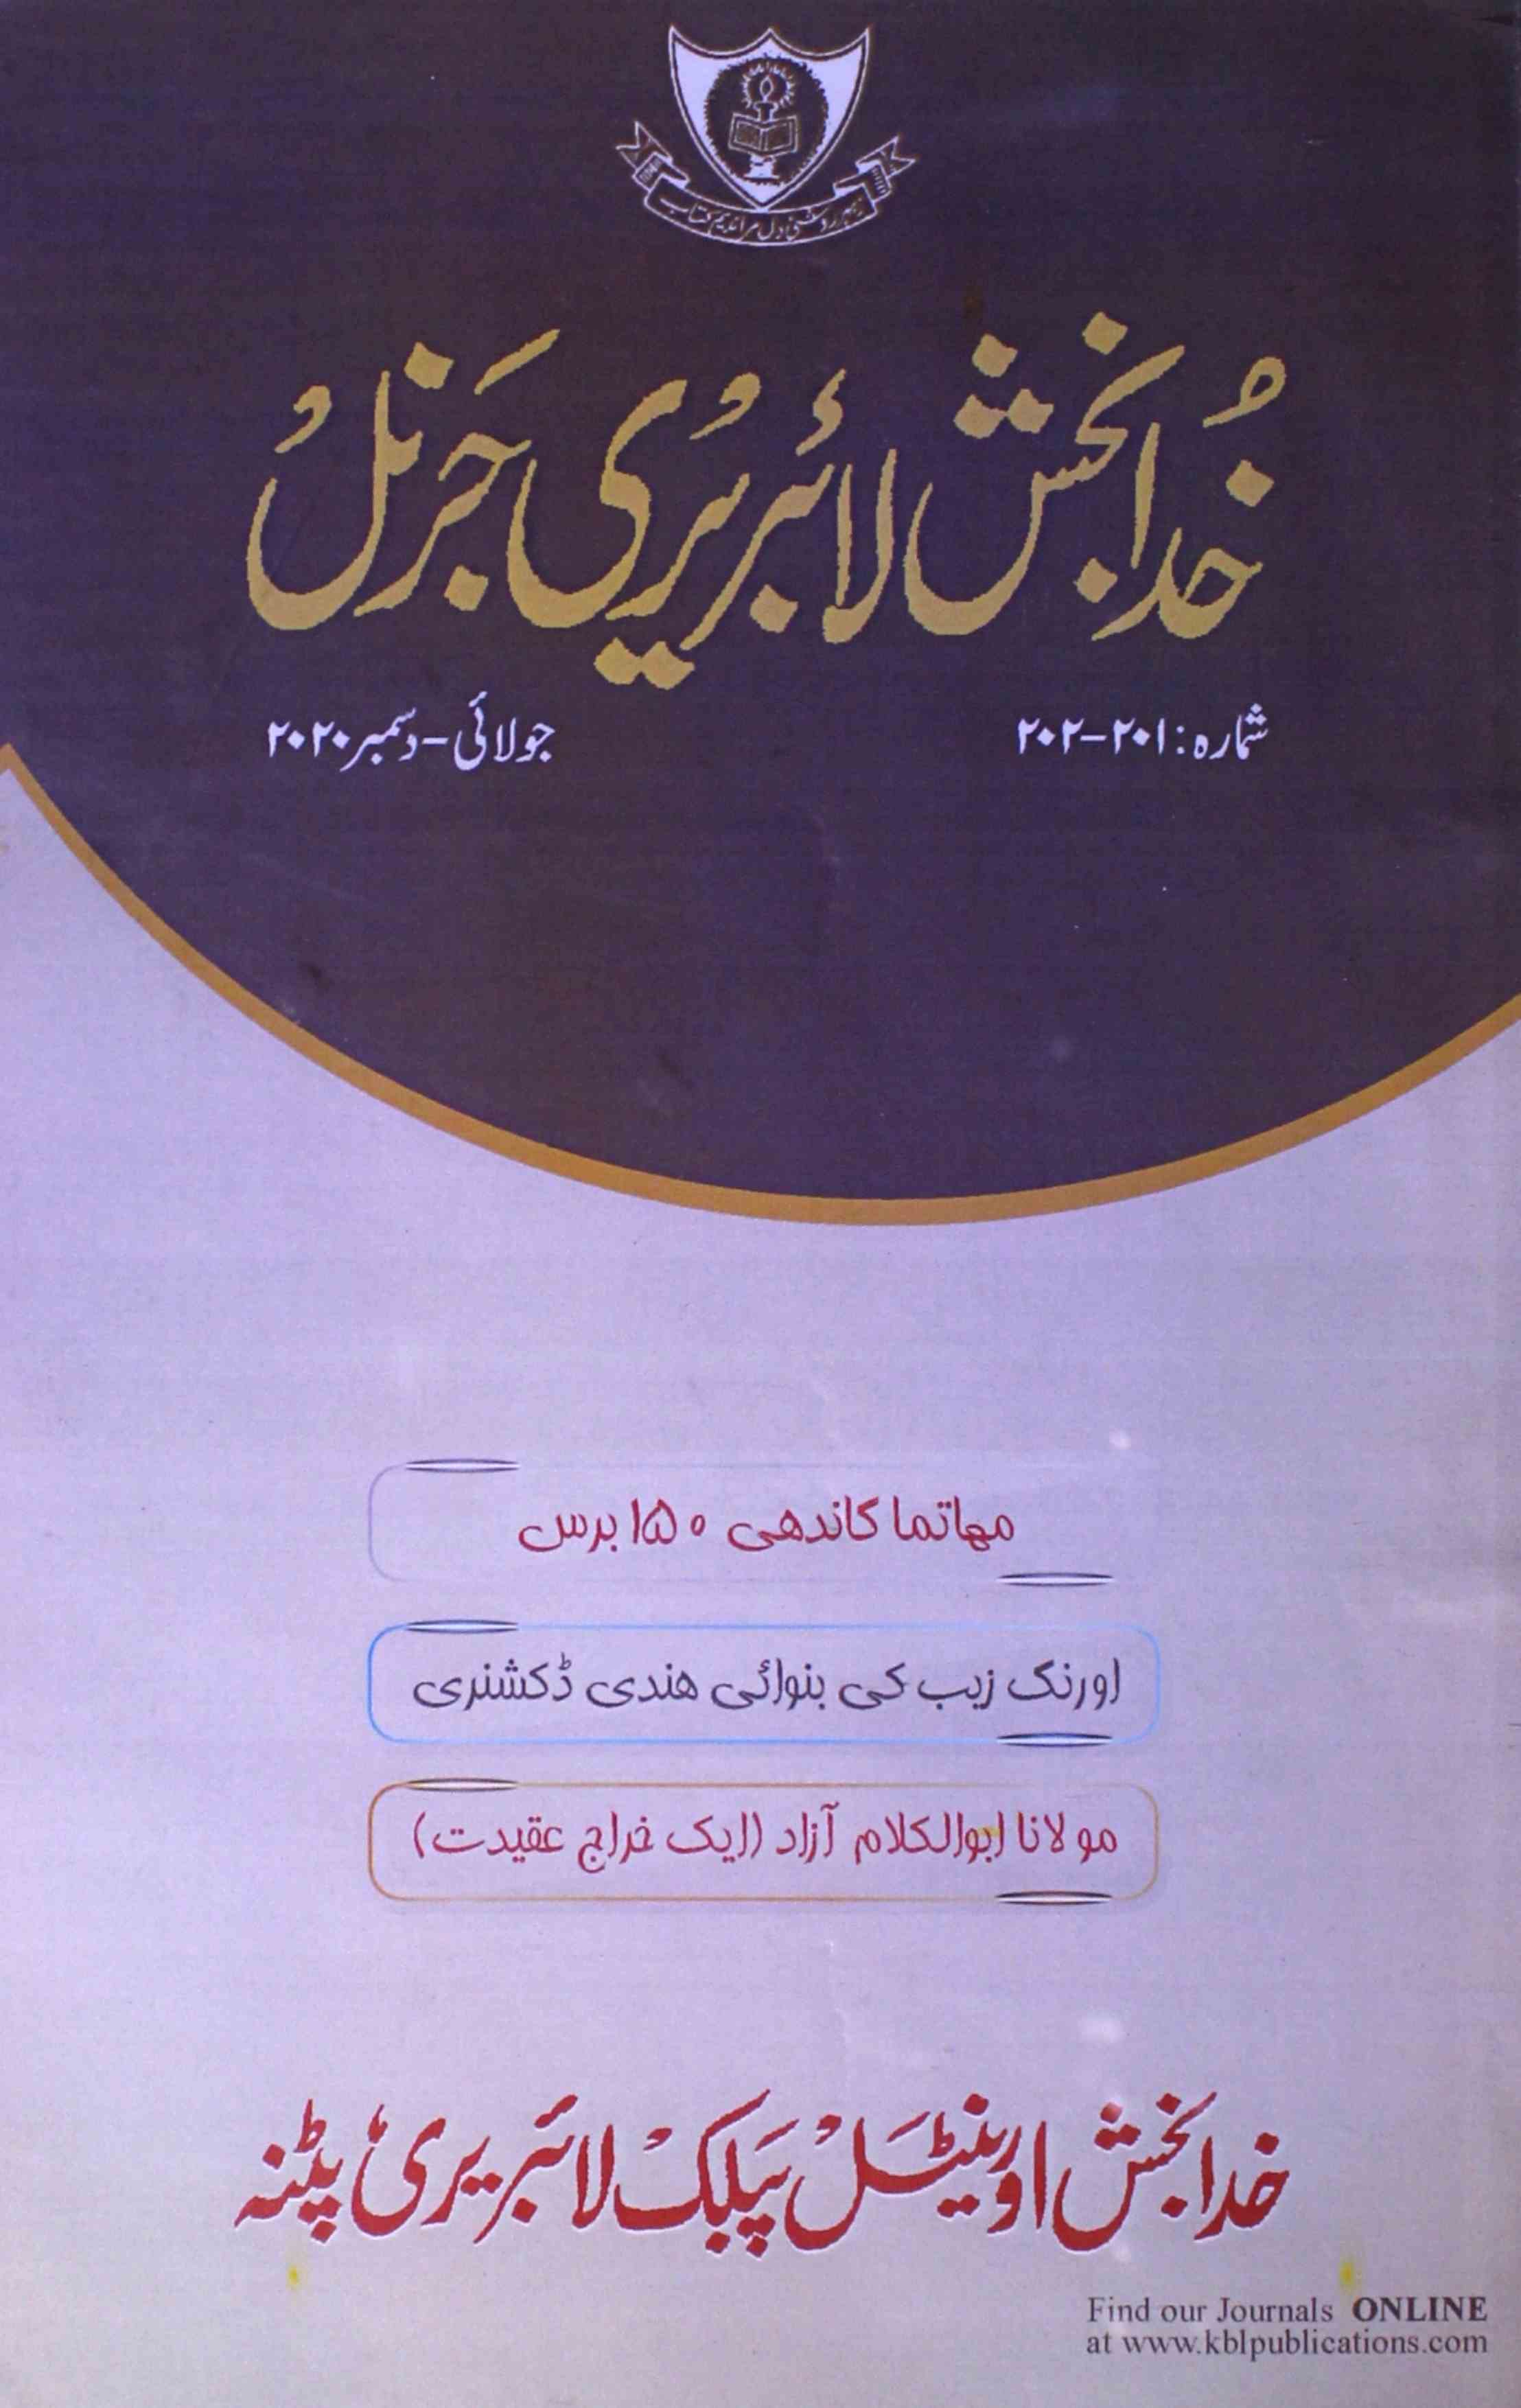 Khuda Bakhs Library Journal sh-201-202-Shumara Number-201,202